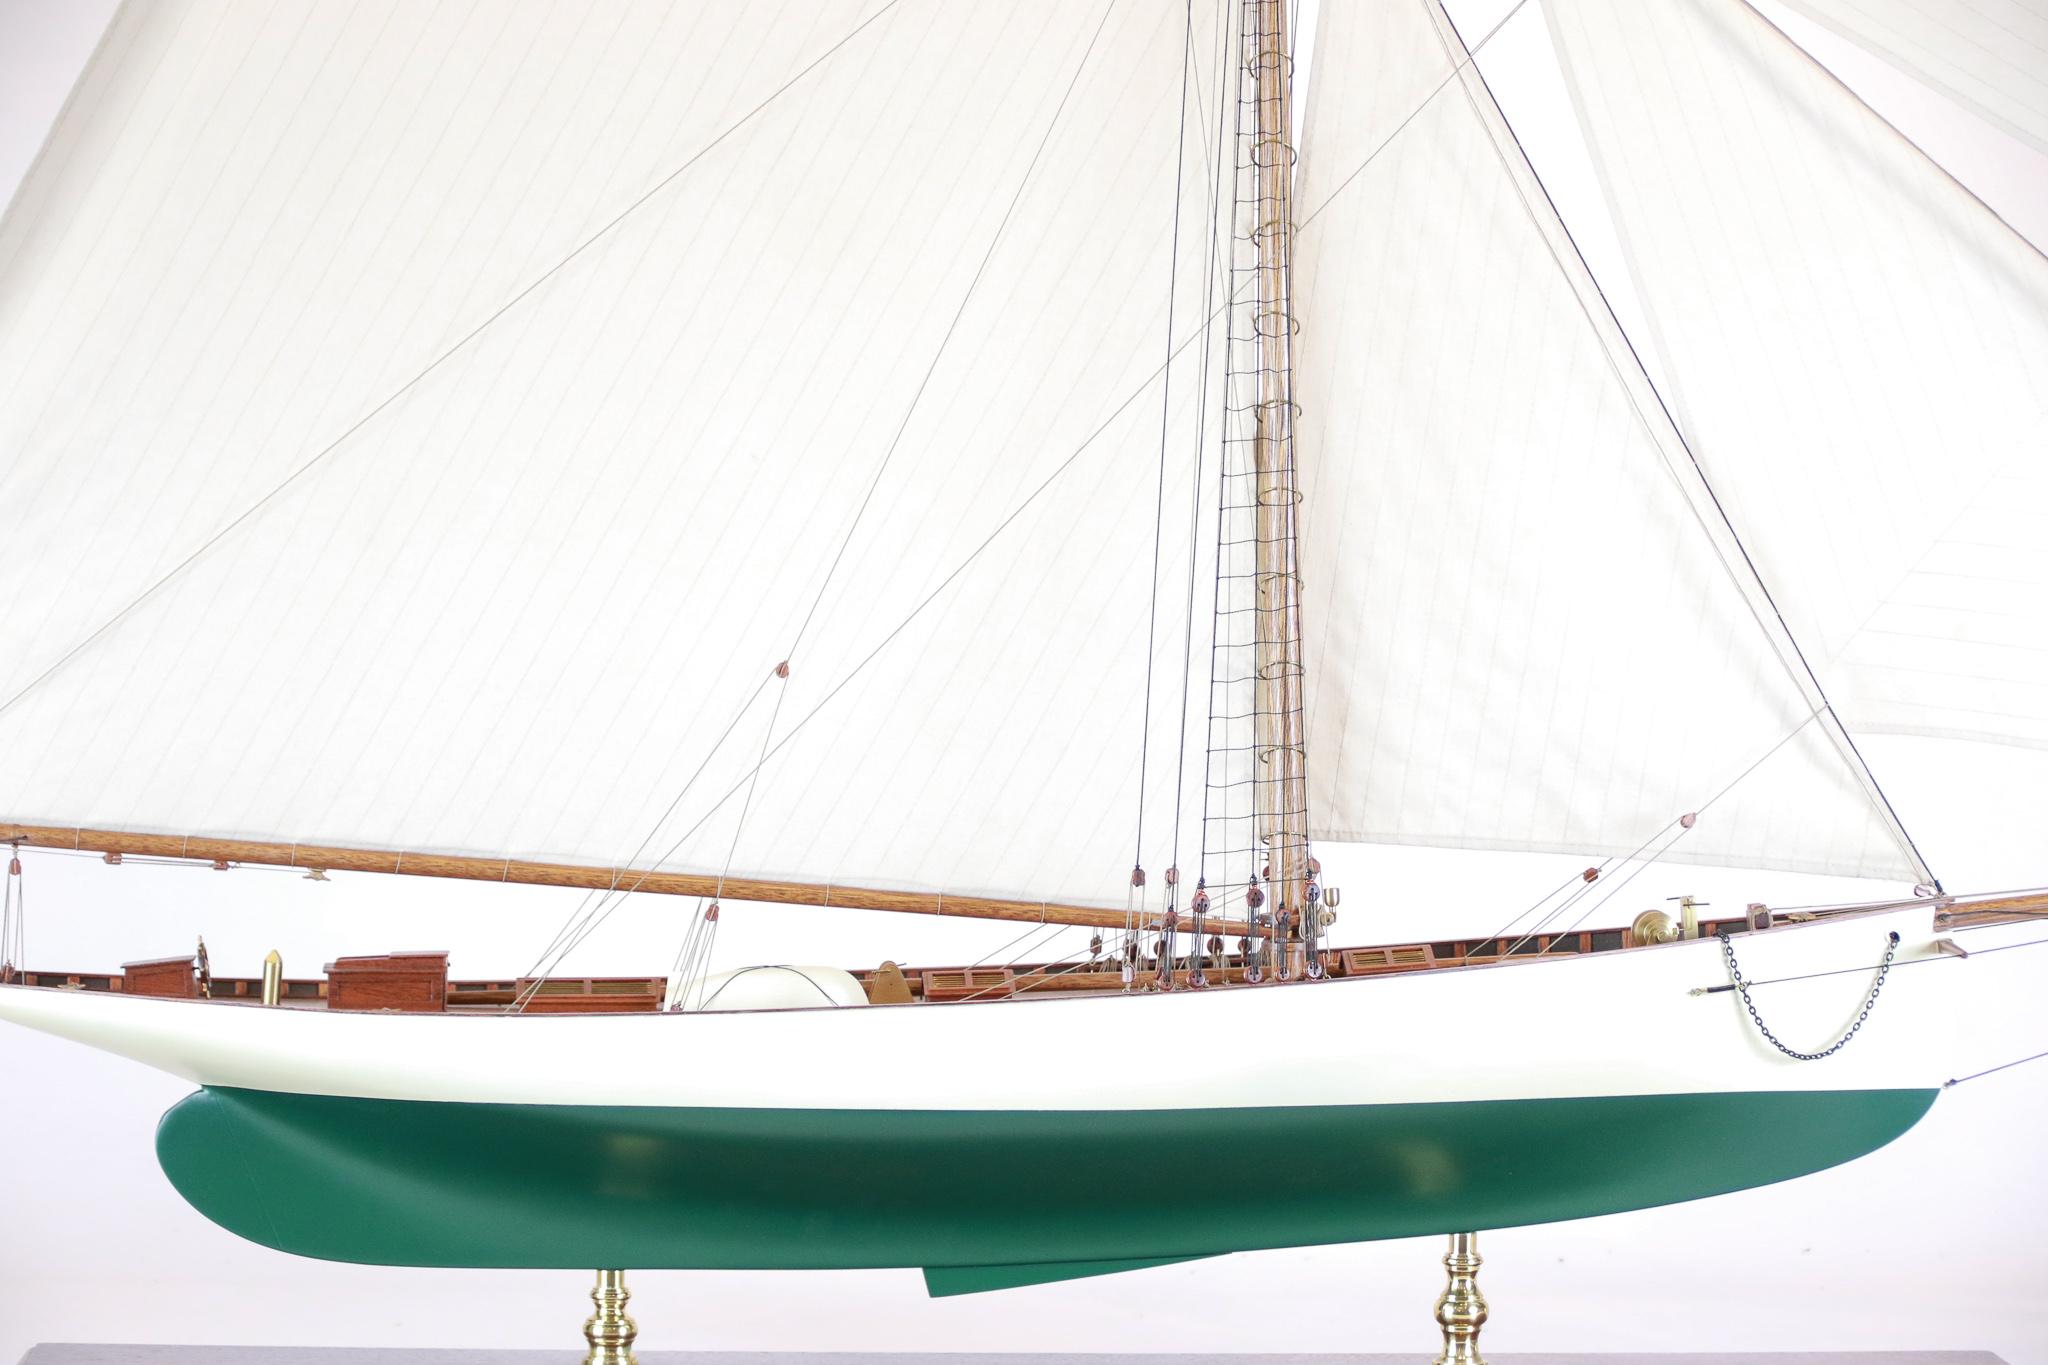 Frühes America's-Cup-Modell der Puritan von 1885. Die Puritan wurde von Edward Burgess entworfen und in der Bootswerft Lawley in Boston gebaut. Puritan war im Besitz von John Malcolm Forbes, der die Yacht ausließ, als sie die britische Yacht Genesta